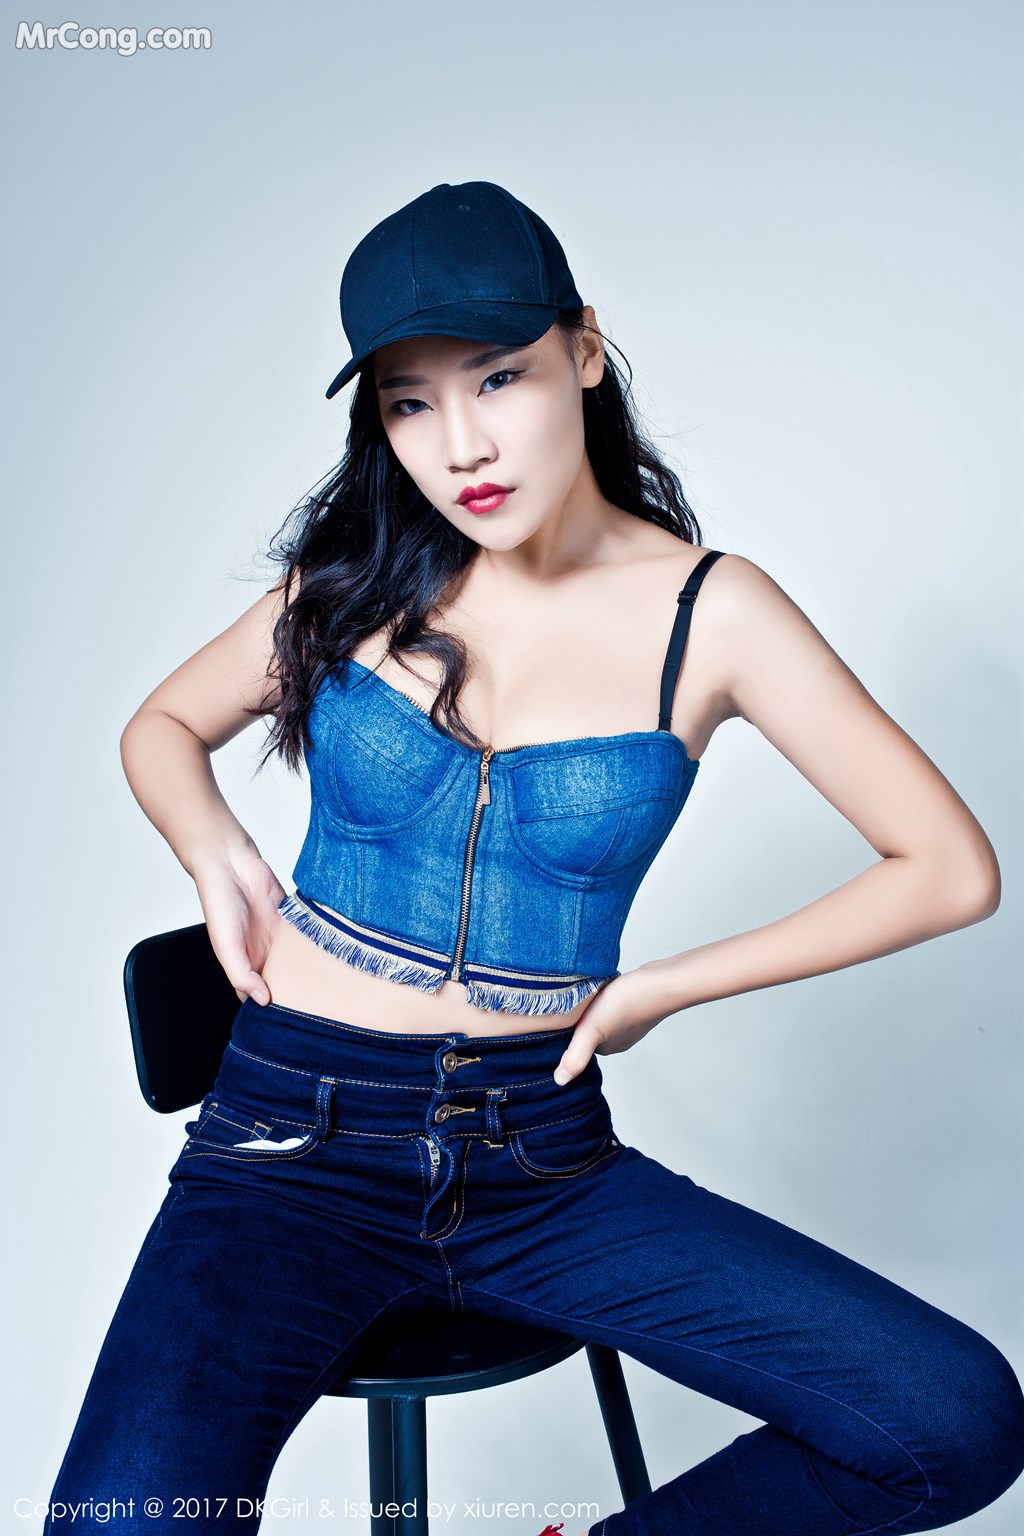 DKGirl Vol.050: Model Meng Qian (梦 倩) (53 photos)